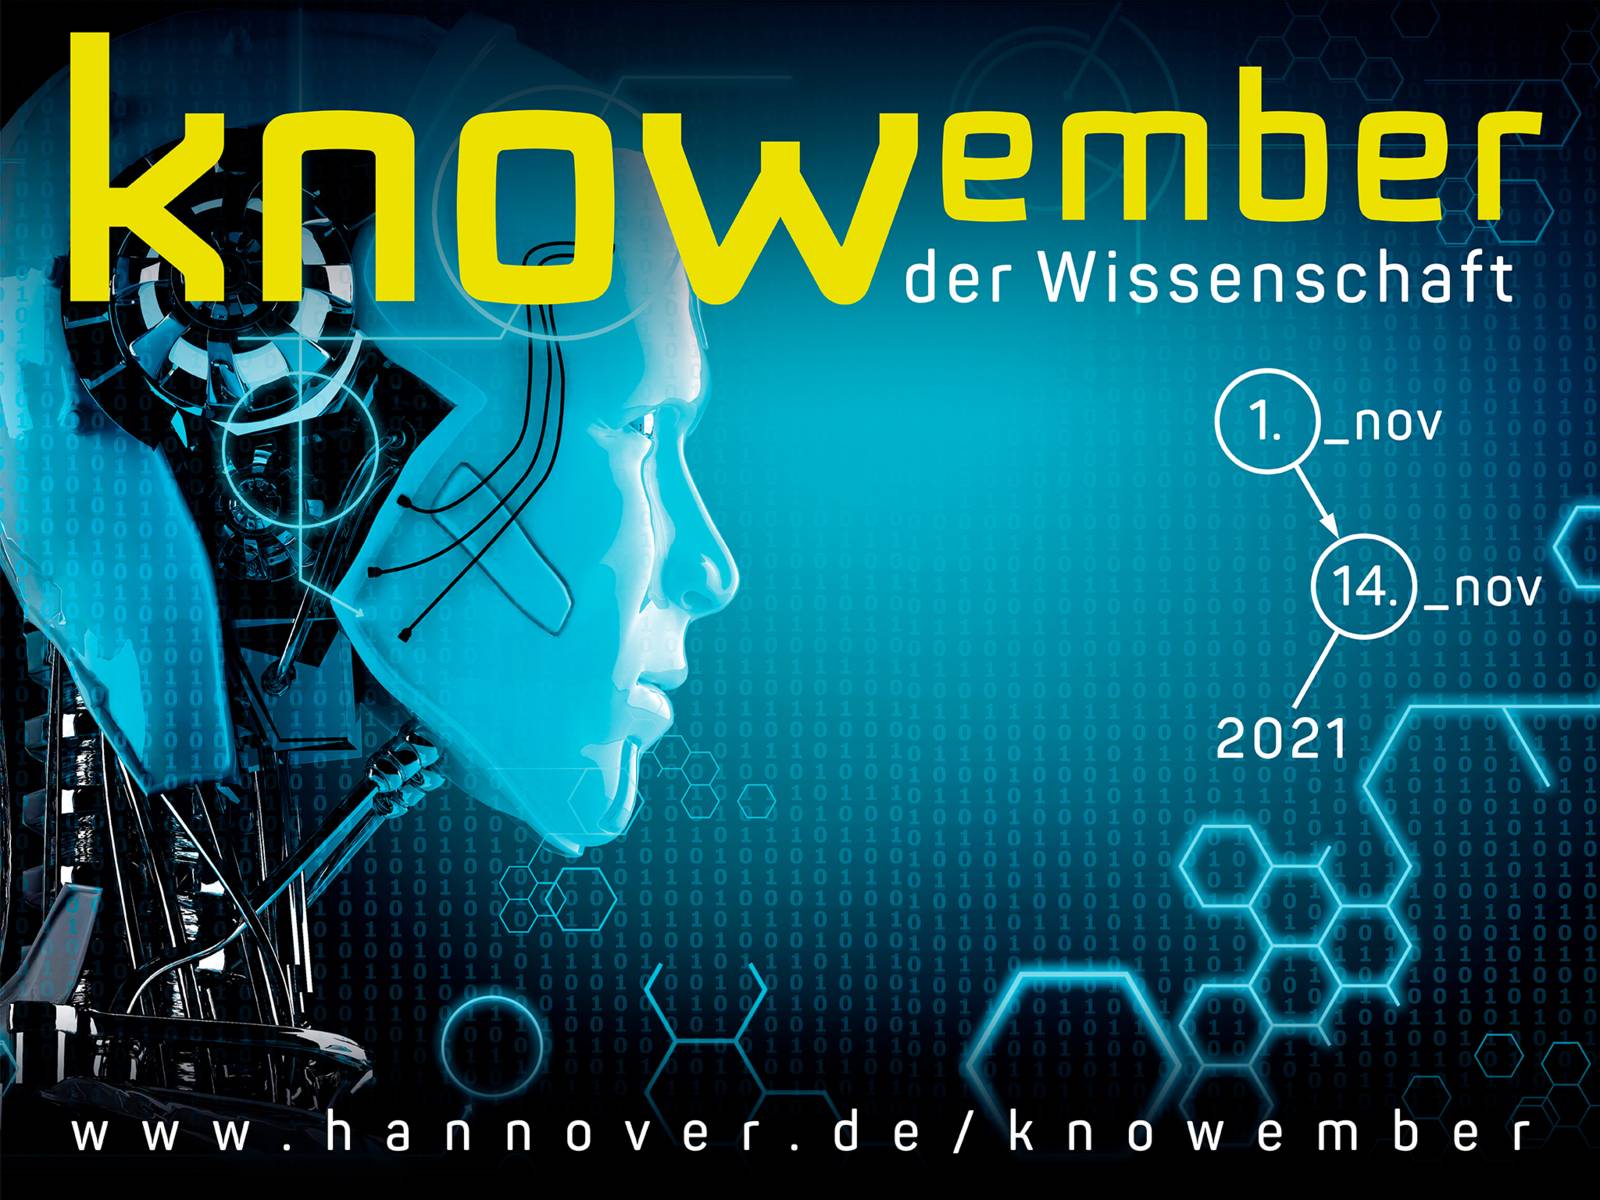 Computeranimiertes Bild eines Roboterkopfes mit Text: "knowember der Wissenschaft" und www.hannover.de/knowember